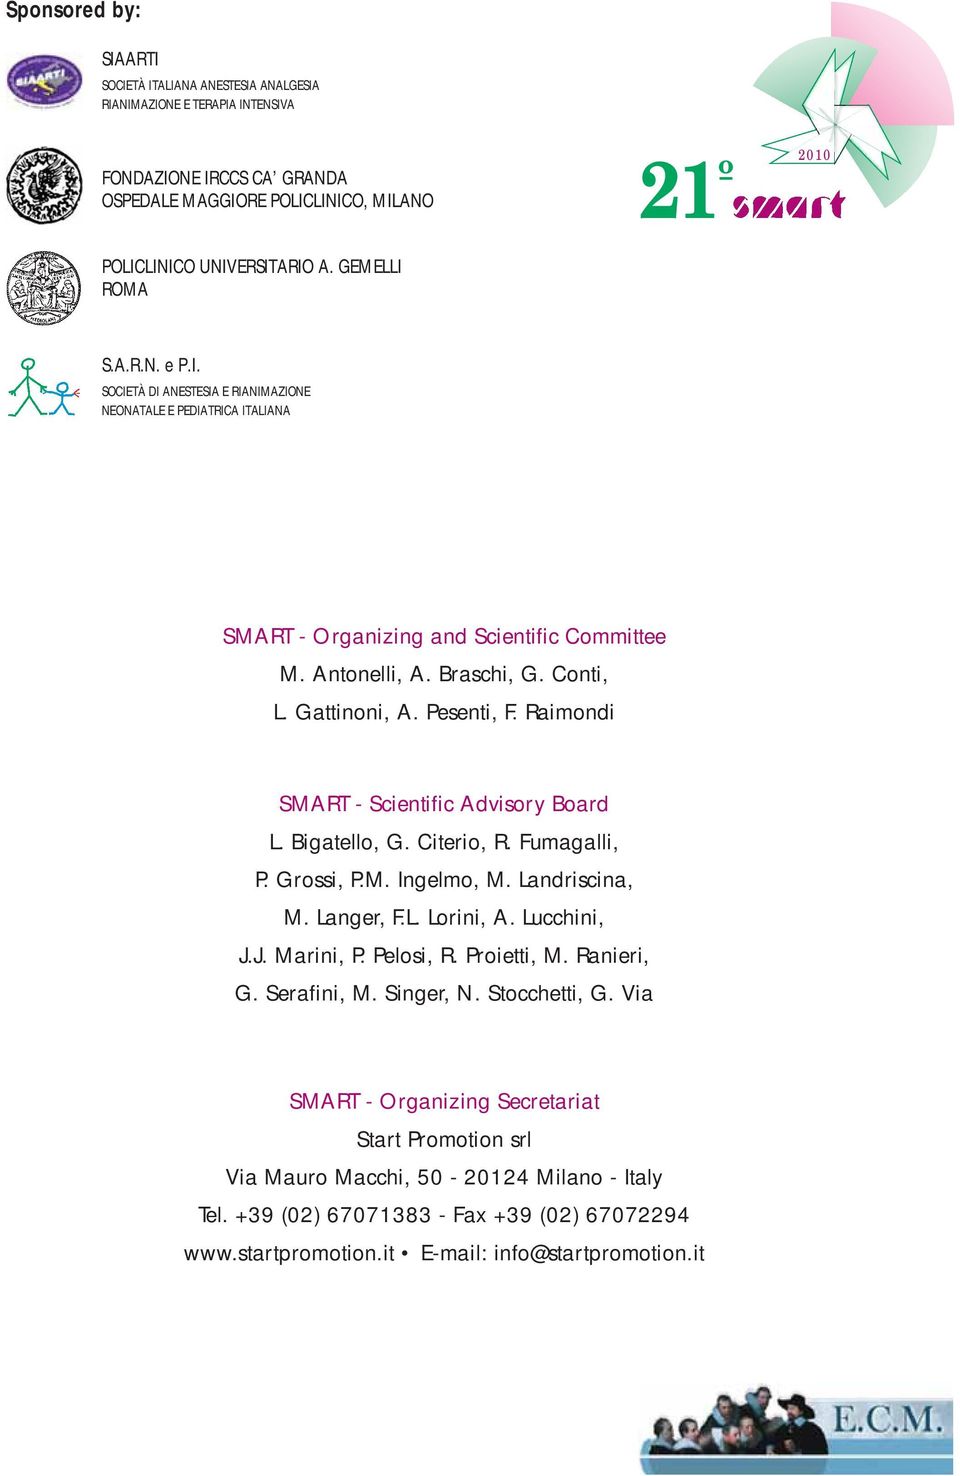 Pesenti, F. Raimondi SMART - Scientific Advisory Board L. Bigatello, G. Citerio, R. Fumagalli, P. Grossi, P.M. Ingelmo, M. Landriscina, M. Langer, F.L. Lorini, A. Lucchini, J.J. Marini, P. Pelosi, R.